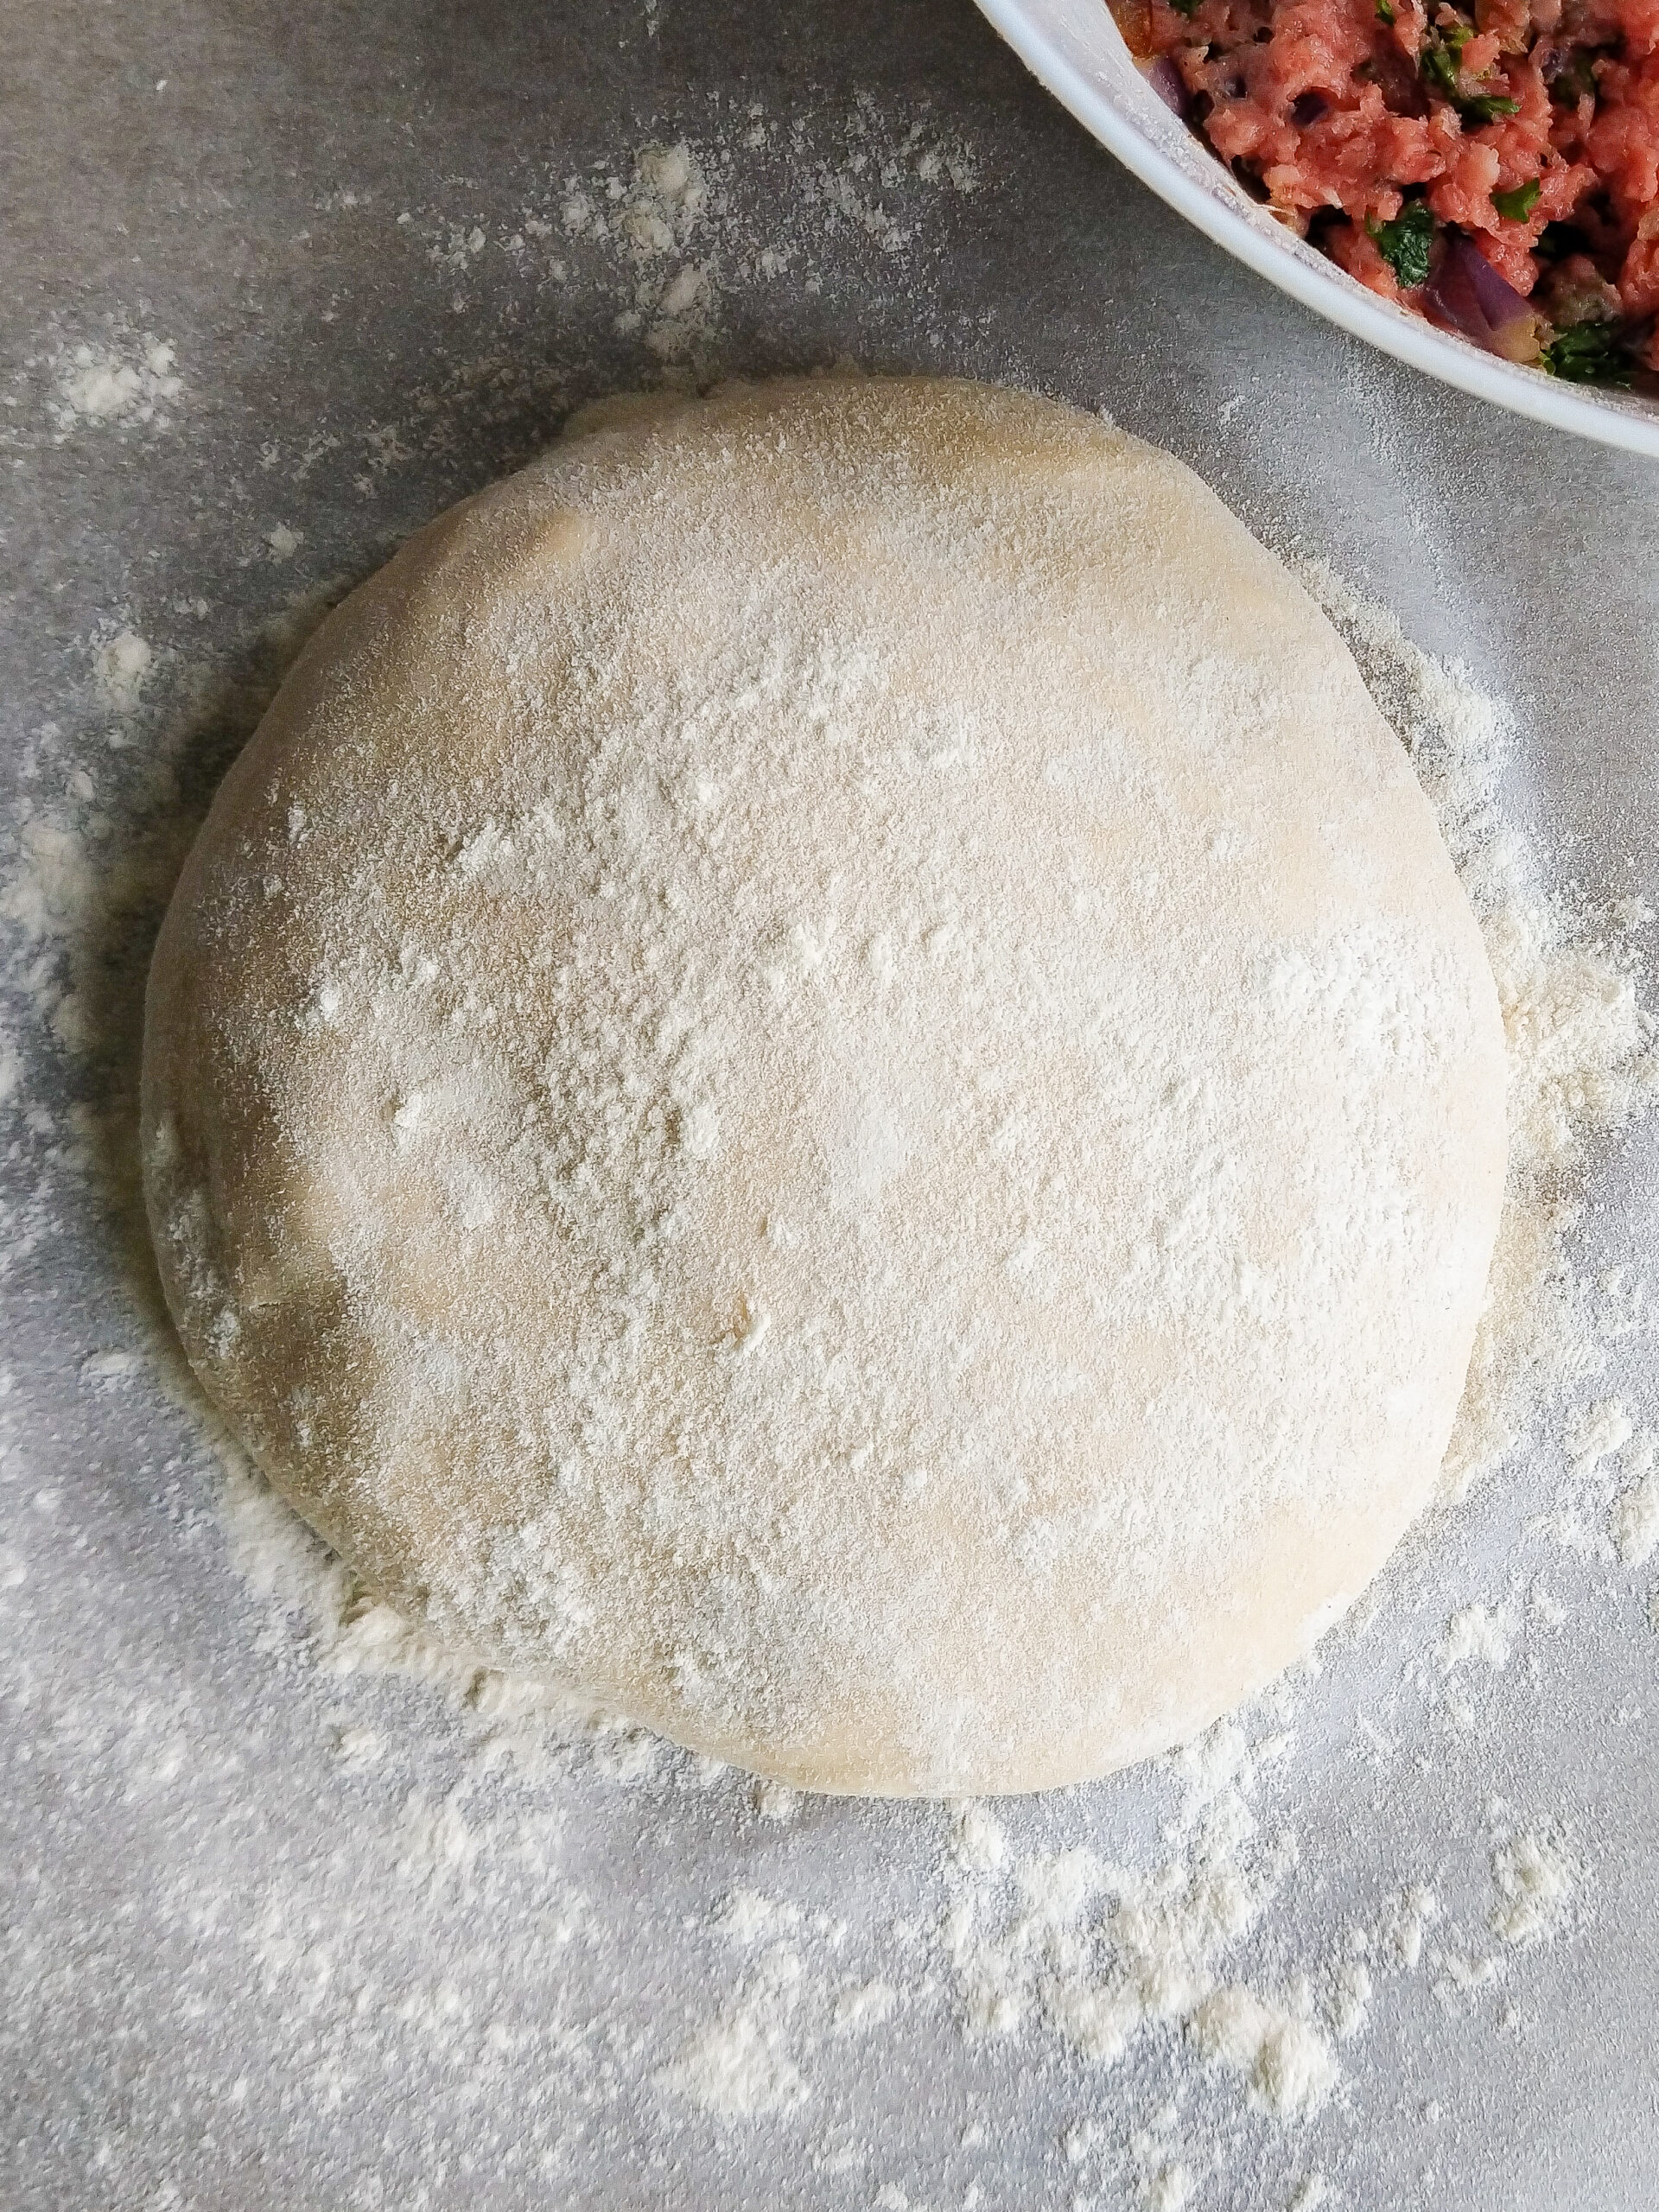 Homemade Russian dough (for pelmeni or vareniki)